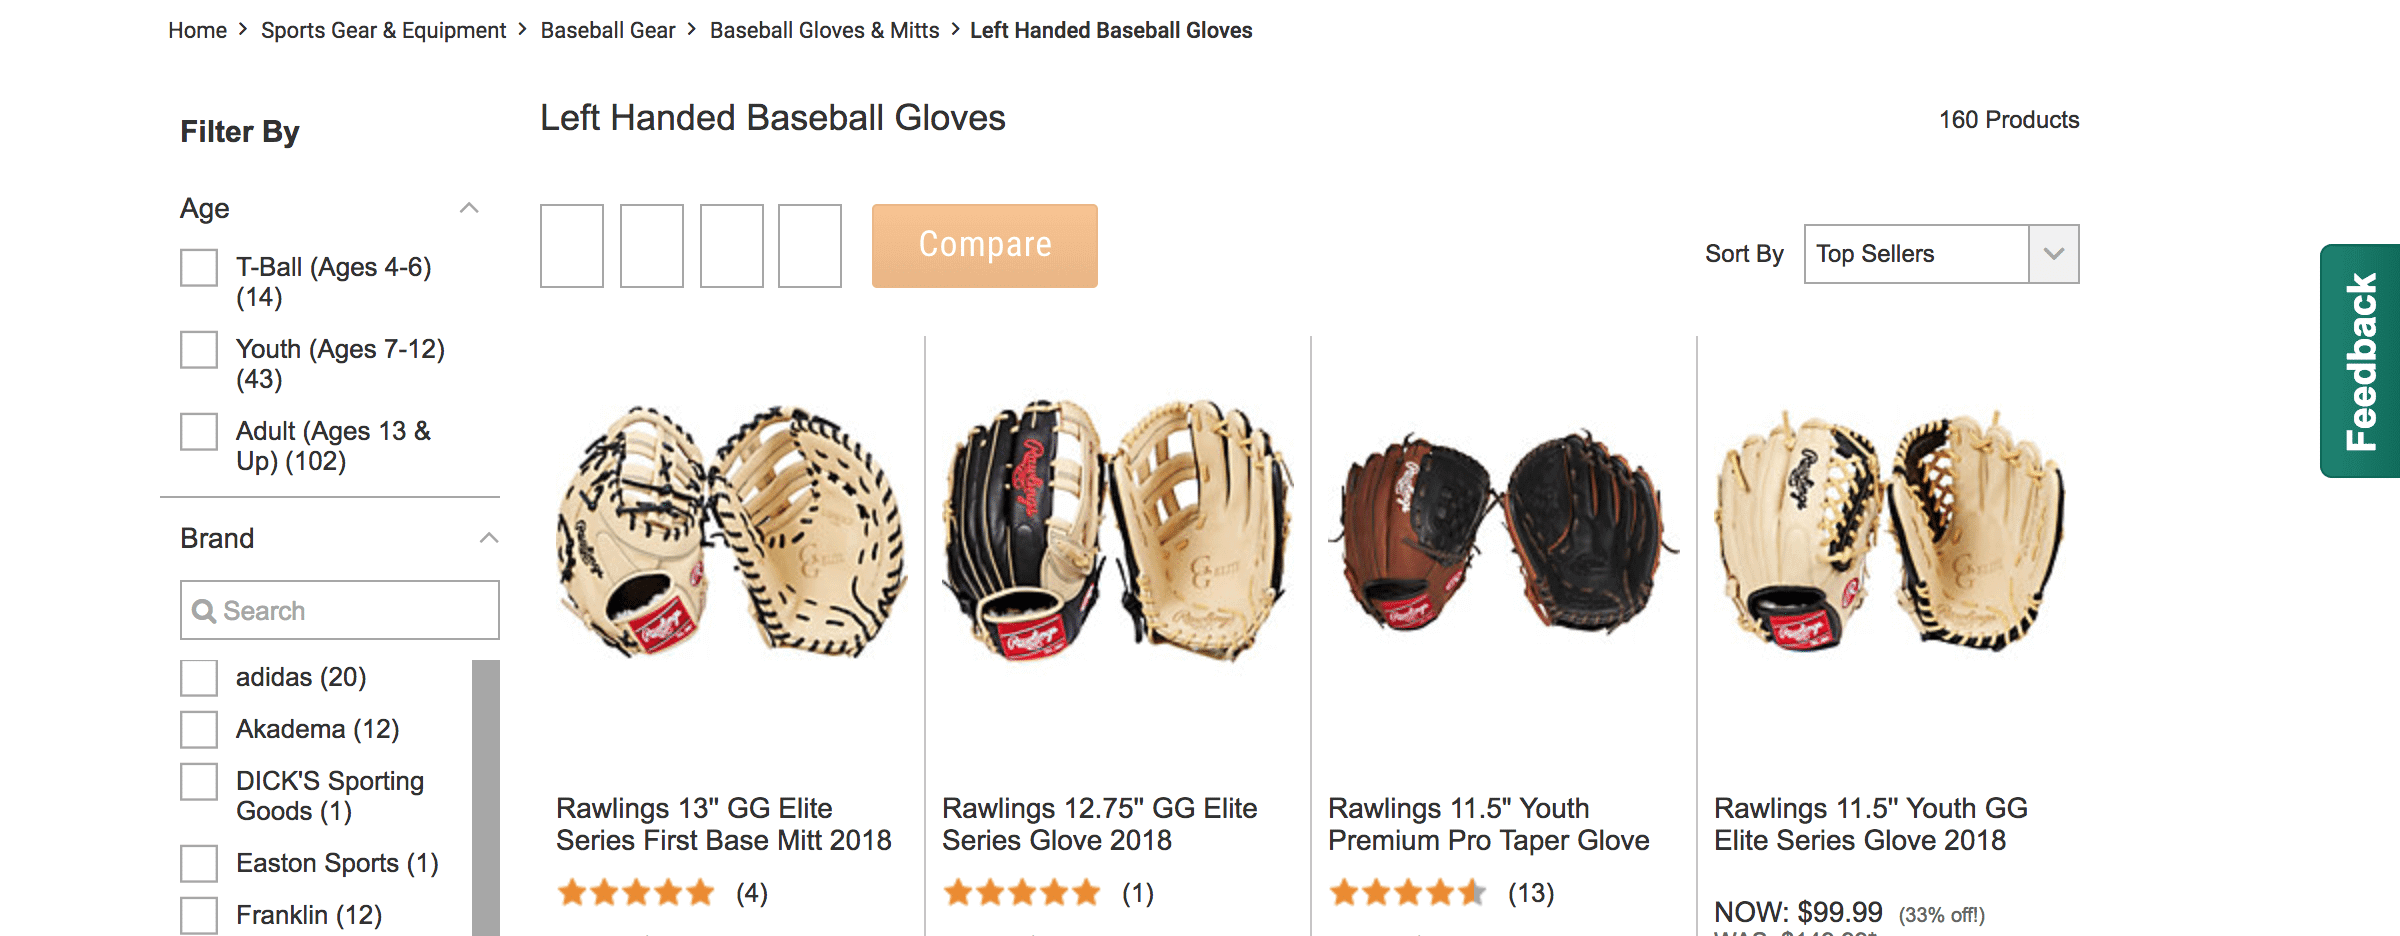 left handed baseball gloves